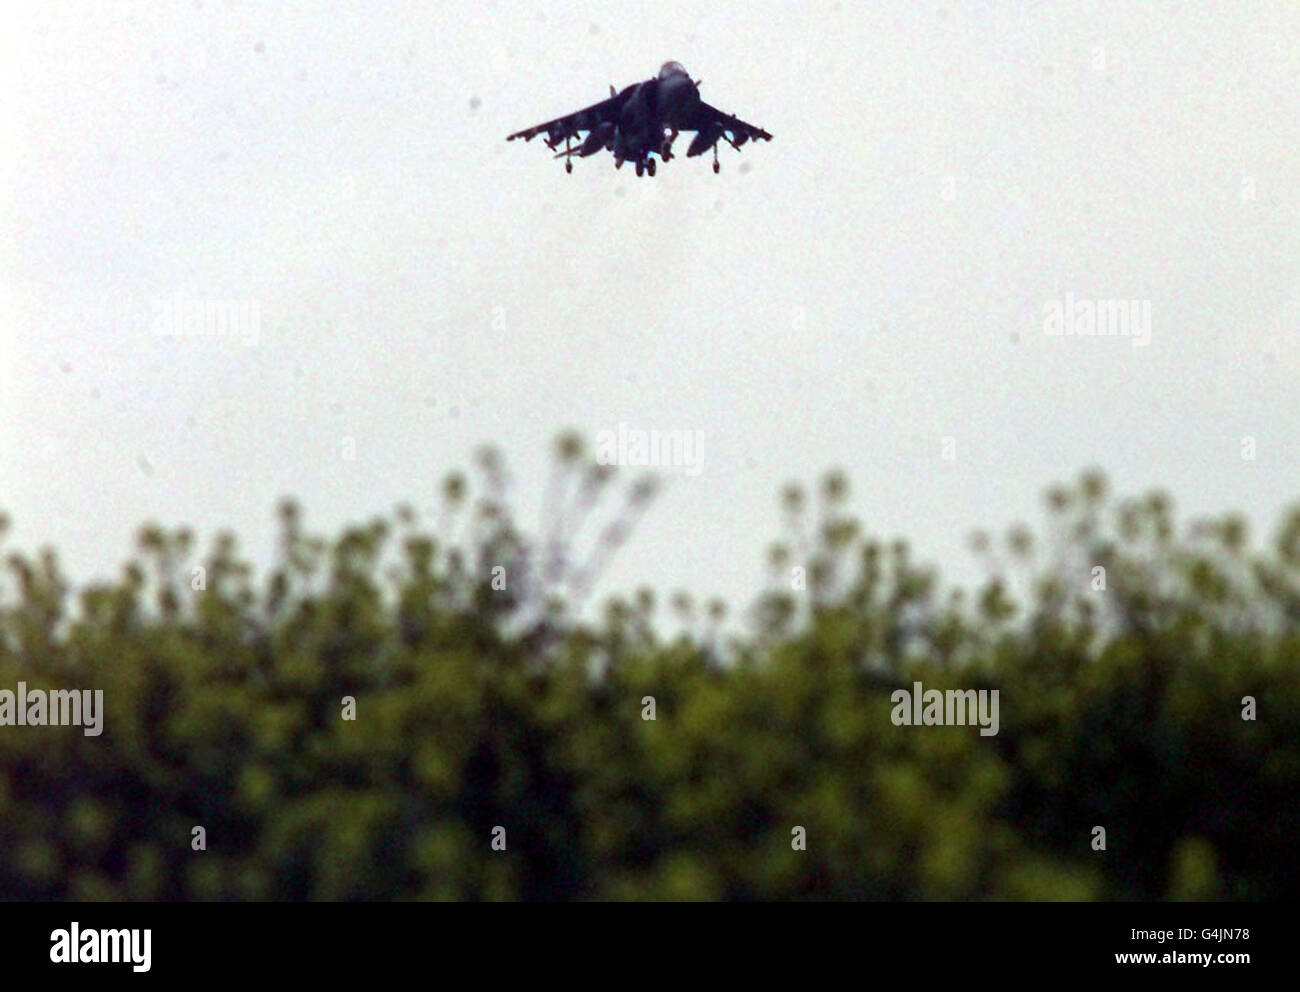 Un aereo RAF Harrier decollerà dalla base aerea di gioia del Colle nell'Italia meridionale, per una missione su obiettivi serbi nell'ambito degli attacchi aerei militari NATO in Jugoslavia e Kosovo. Foto Stock